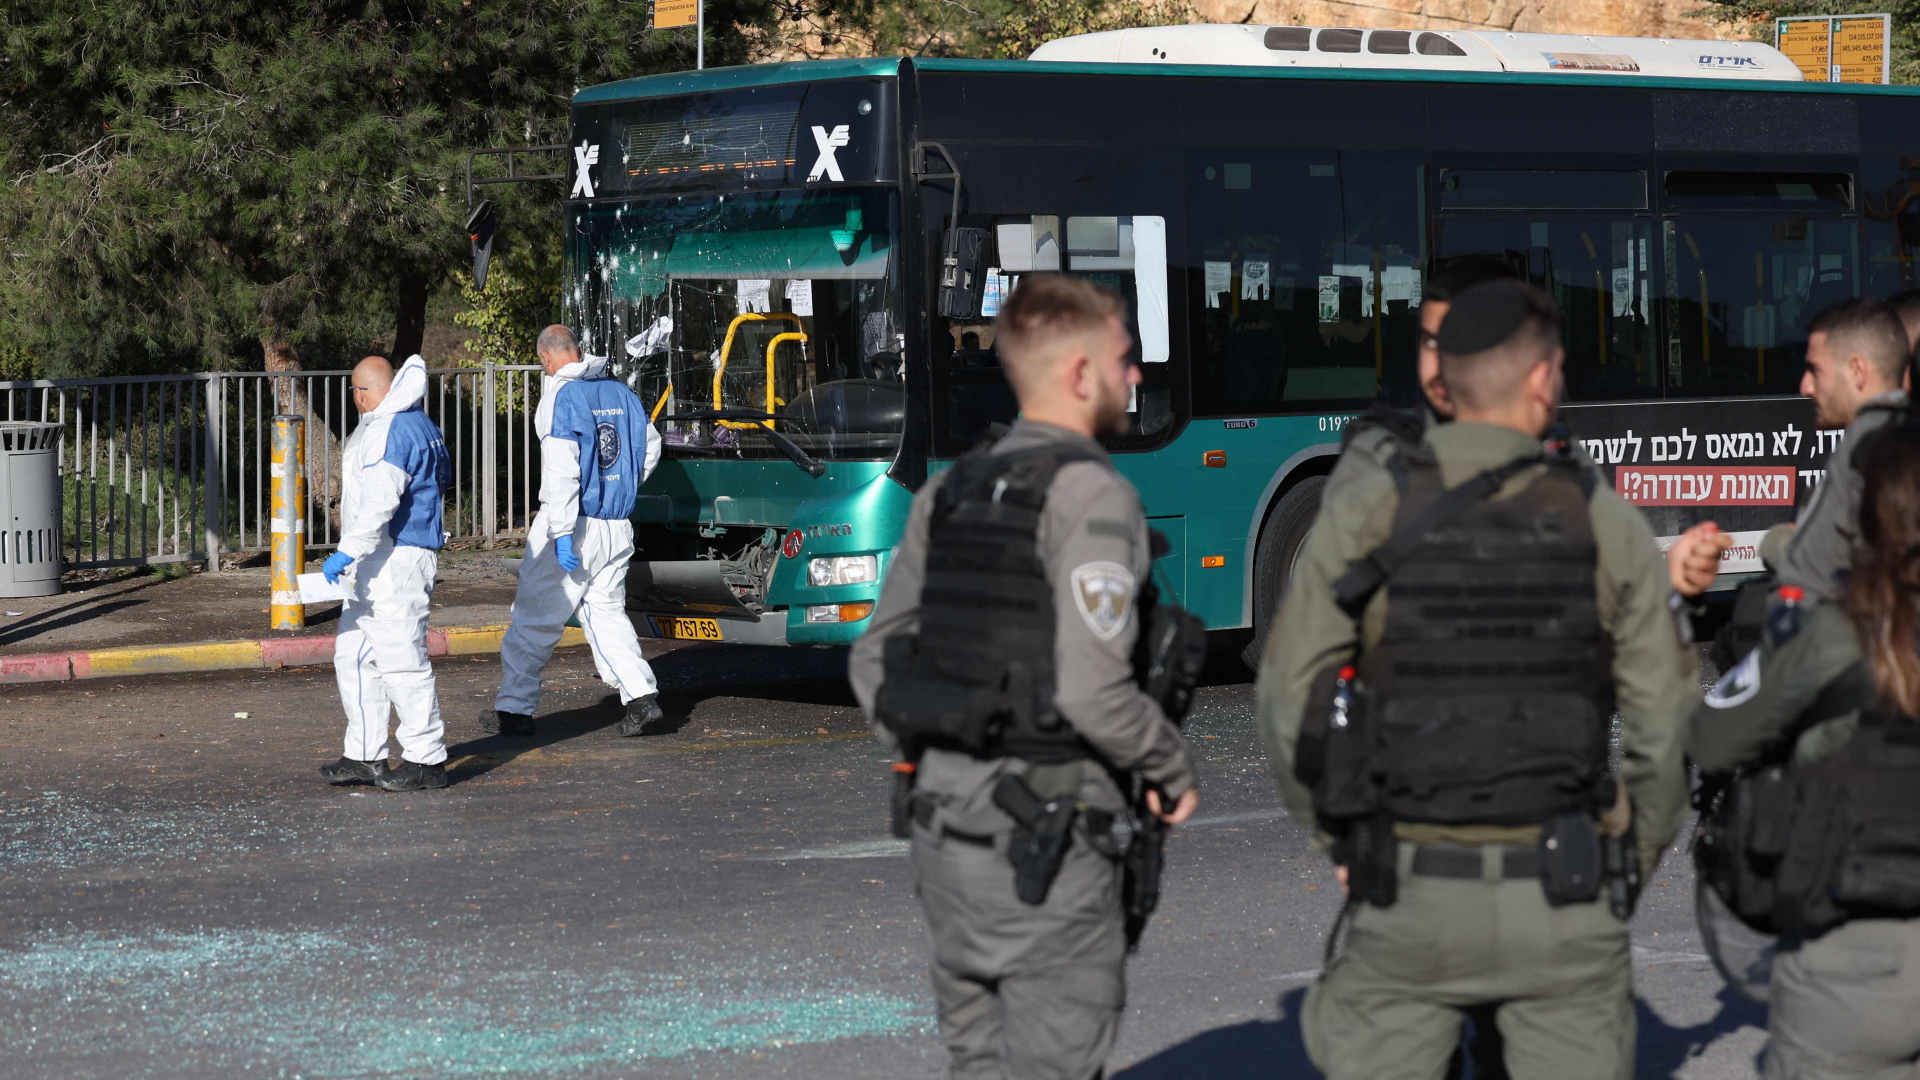 Polizisten und Einsatzkräfte der Spurensicherung sichern nach einem mutmaßlichen Anschlag an einer Bushaltestelle im Großraum Jerusalem den möglichen Tatort mit einem beschädigten Bus. | AFP